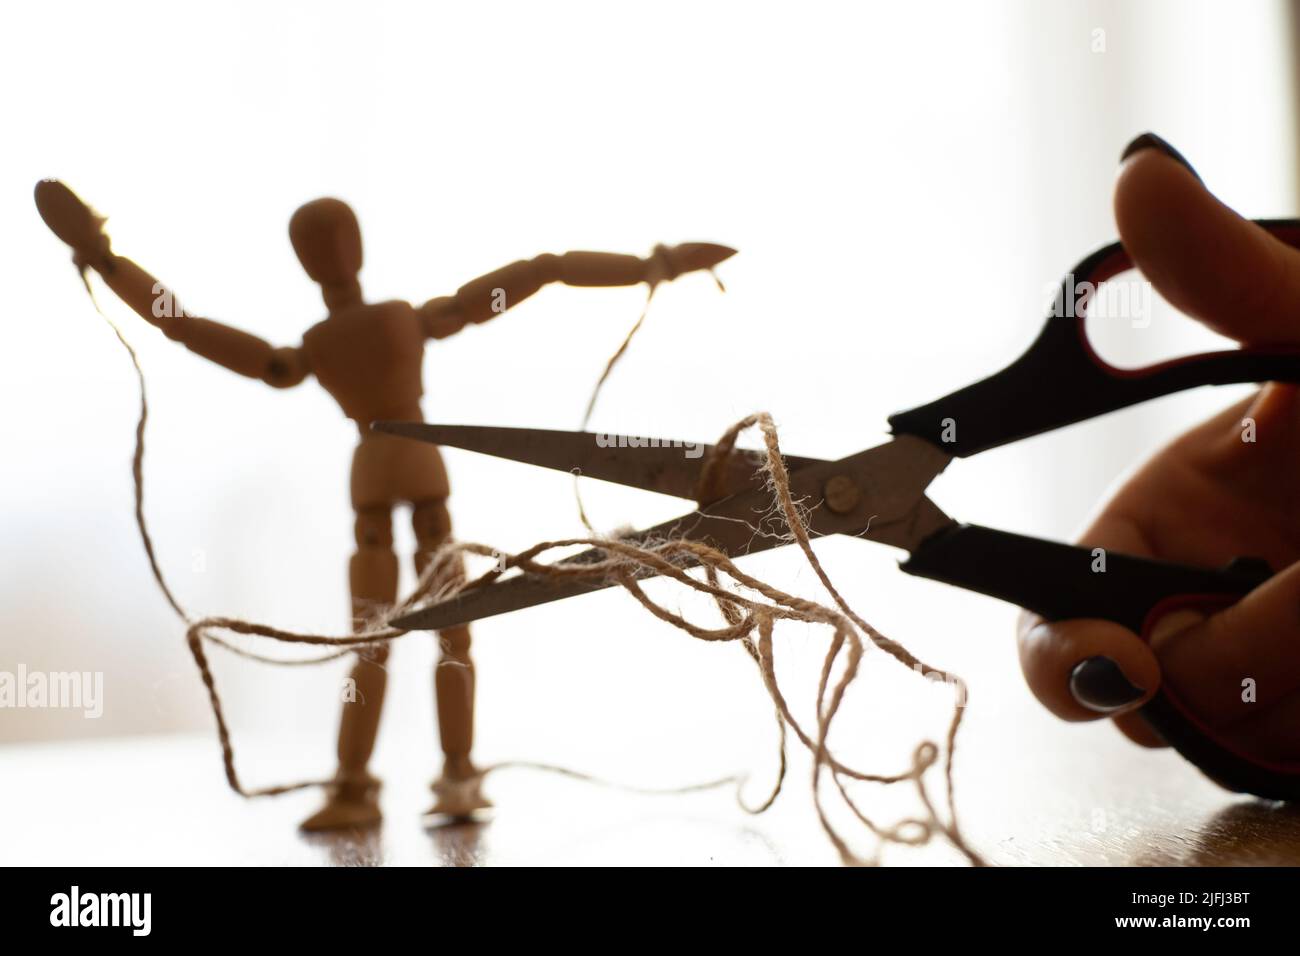 Holzpuppe mit Seilen an den Puppenspieler gebunden und Schere schneiden das Seil, Manipulation von Menschen und Freiheit, Kraft und Freiheit über Macht Stockfoto